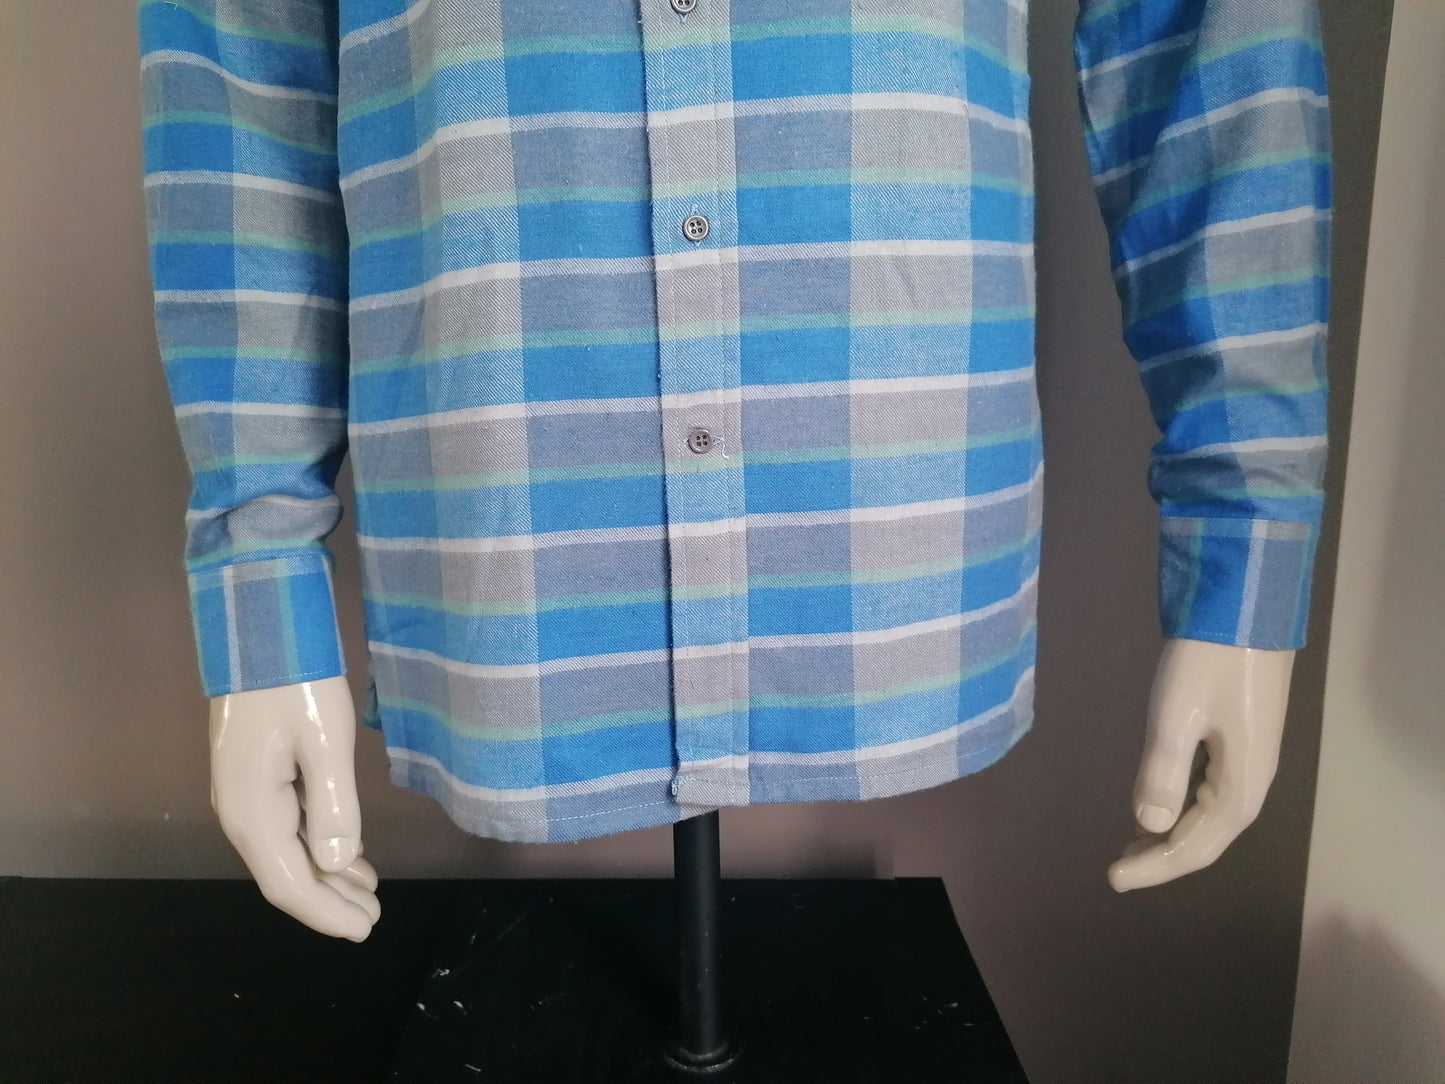 Camicia della flanella dell'autoadesivo della Seid vintage. Verde blu controllato. Mt l.